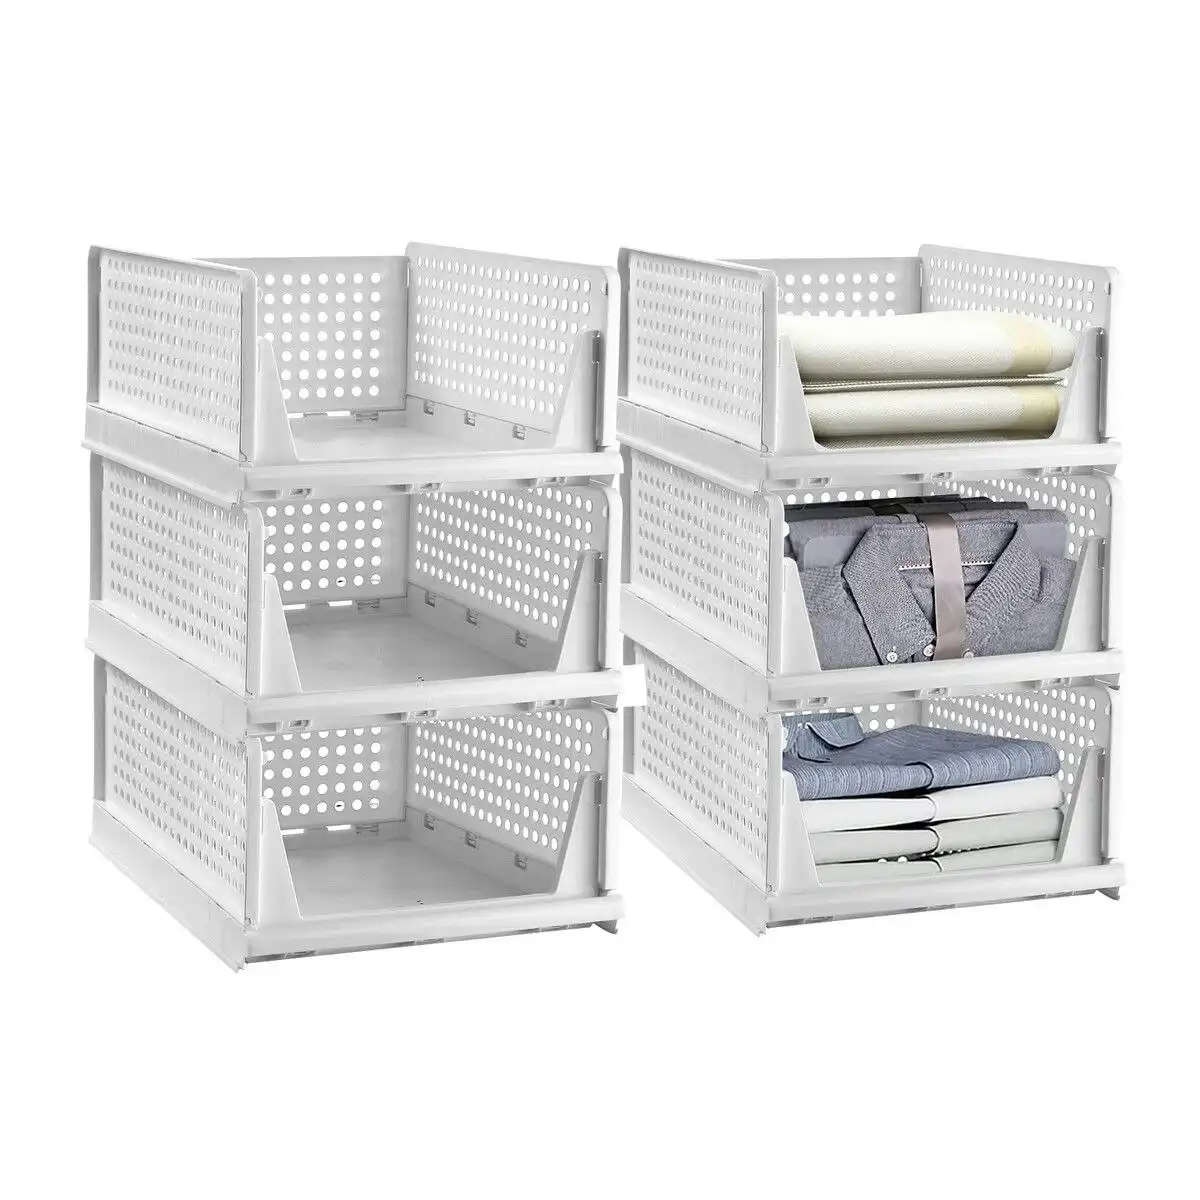 Ausway 6pcs Storage Boxes Plastic Stackable Shoe Container Handbag Closet Clothes Organizer Foldable Drawers Shelf Baskets